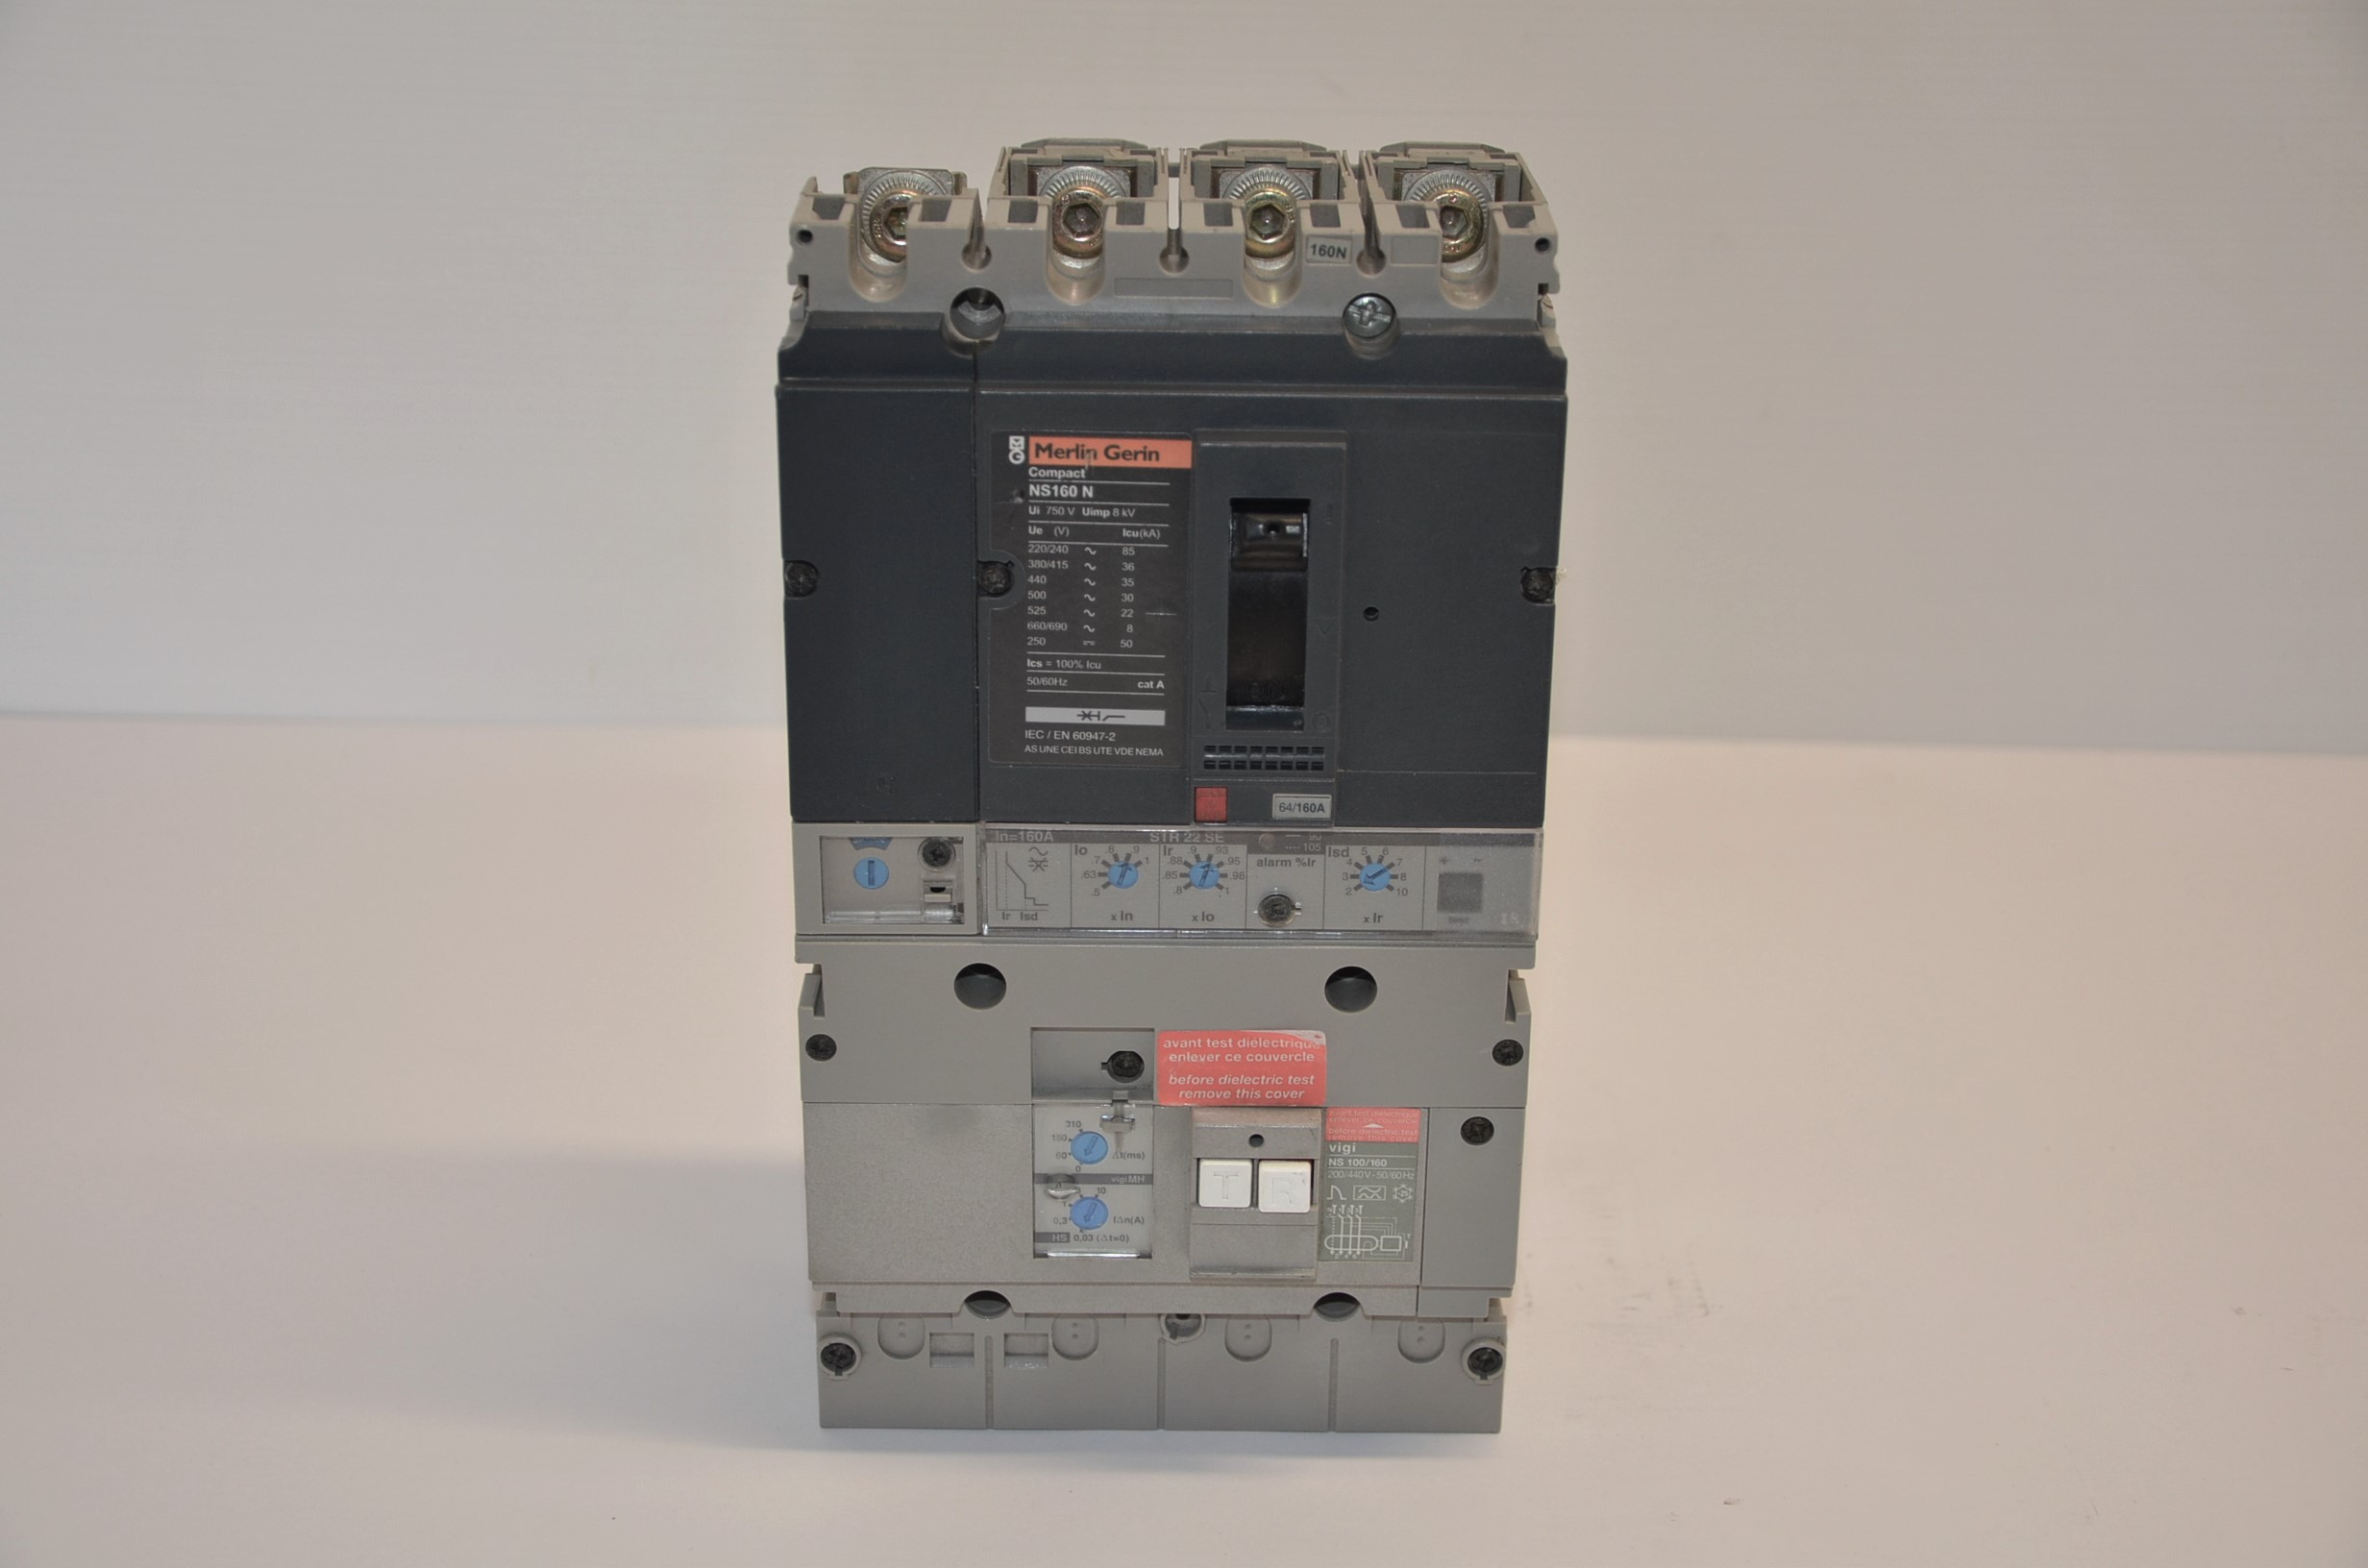 Interruttore Merlin Gerin mod. Compact NS160N in vendita - foto 1